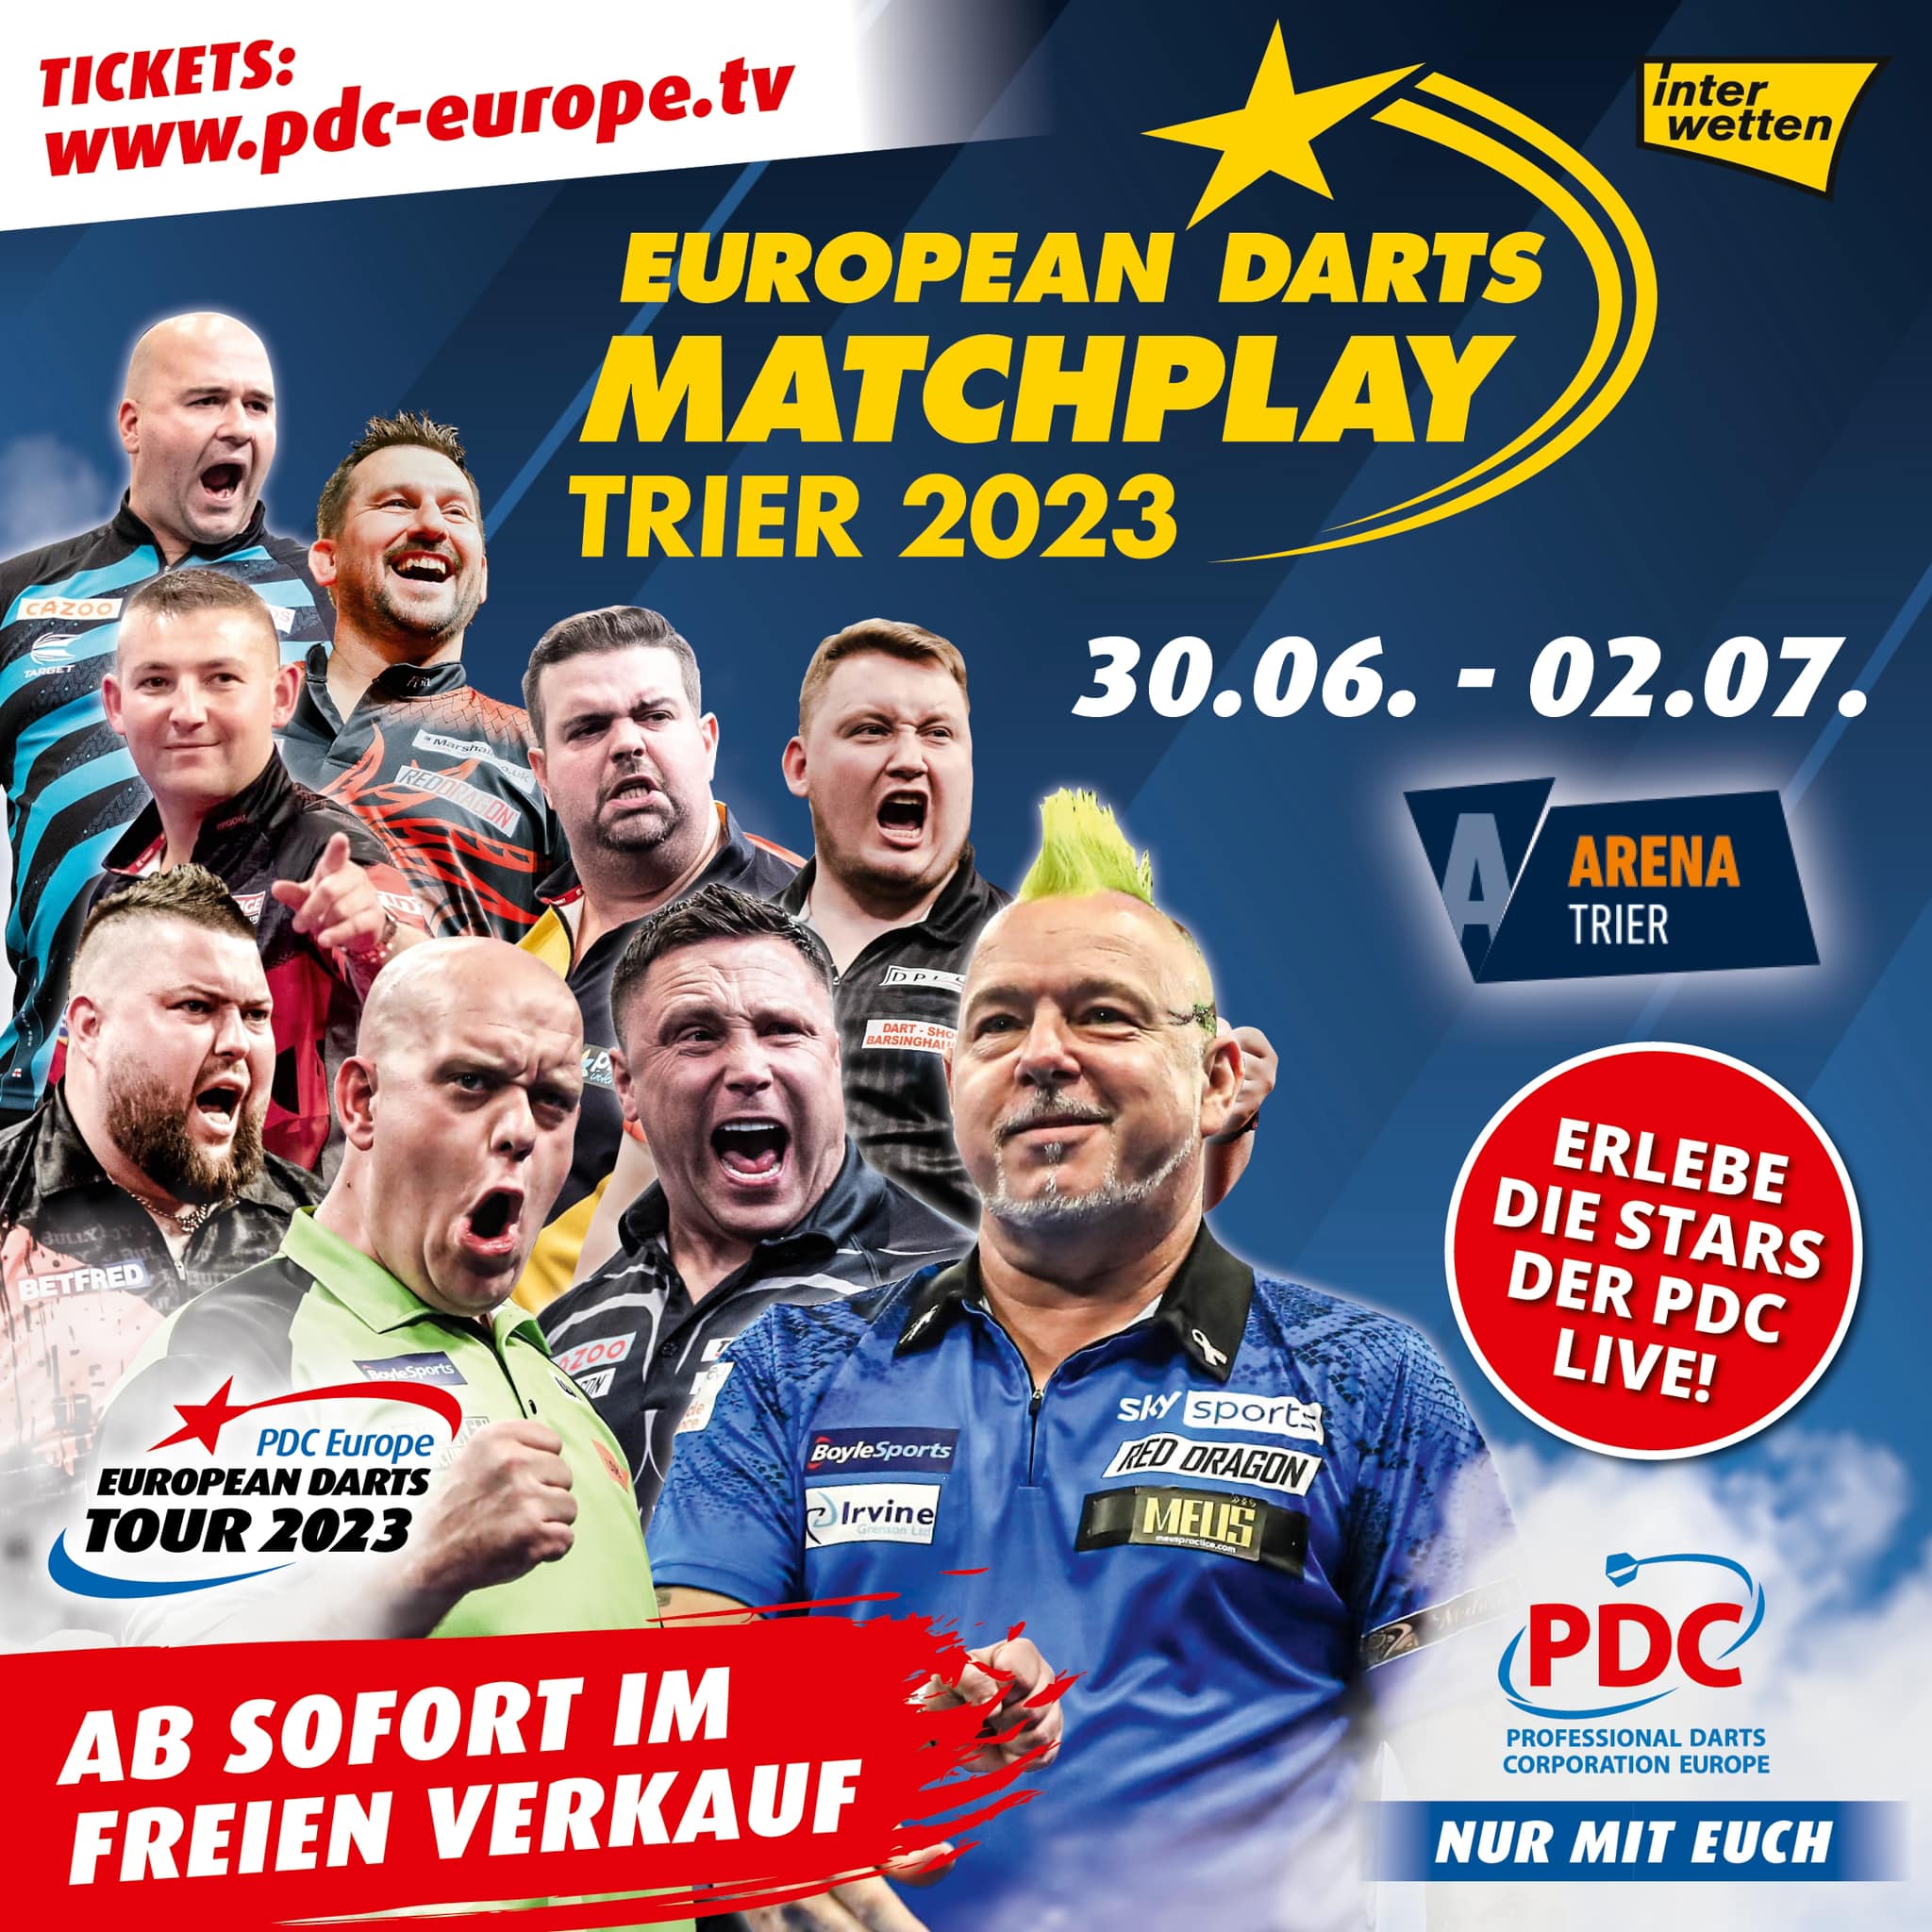 PDC European Darts Matchplay Trier VIP-Tickets jetzt verfügbar